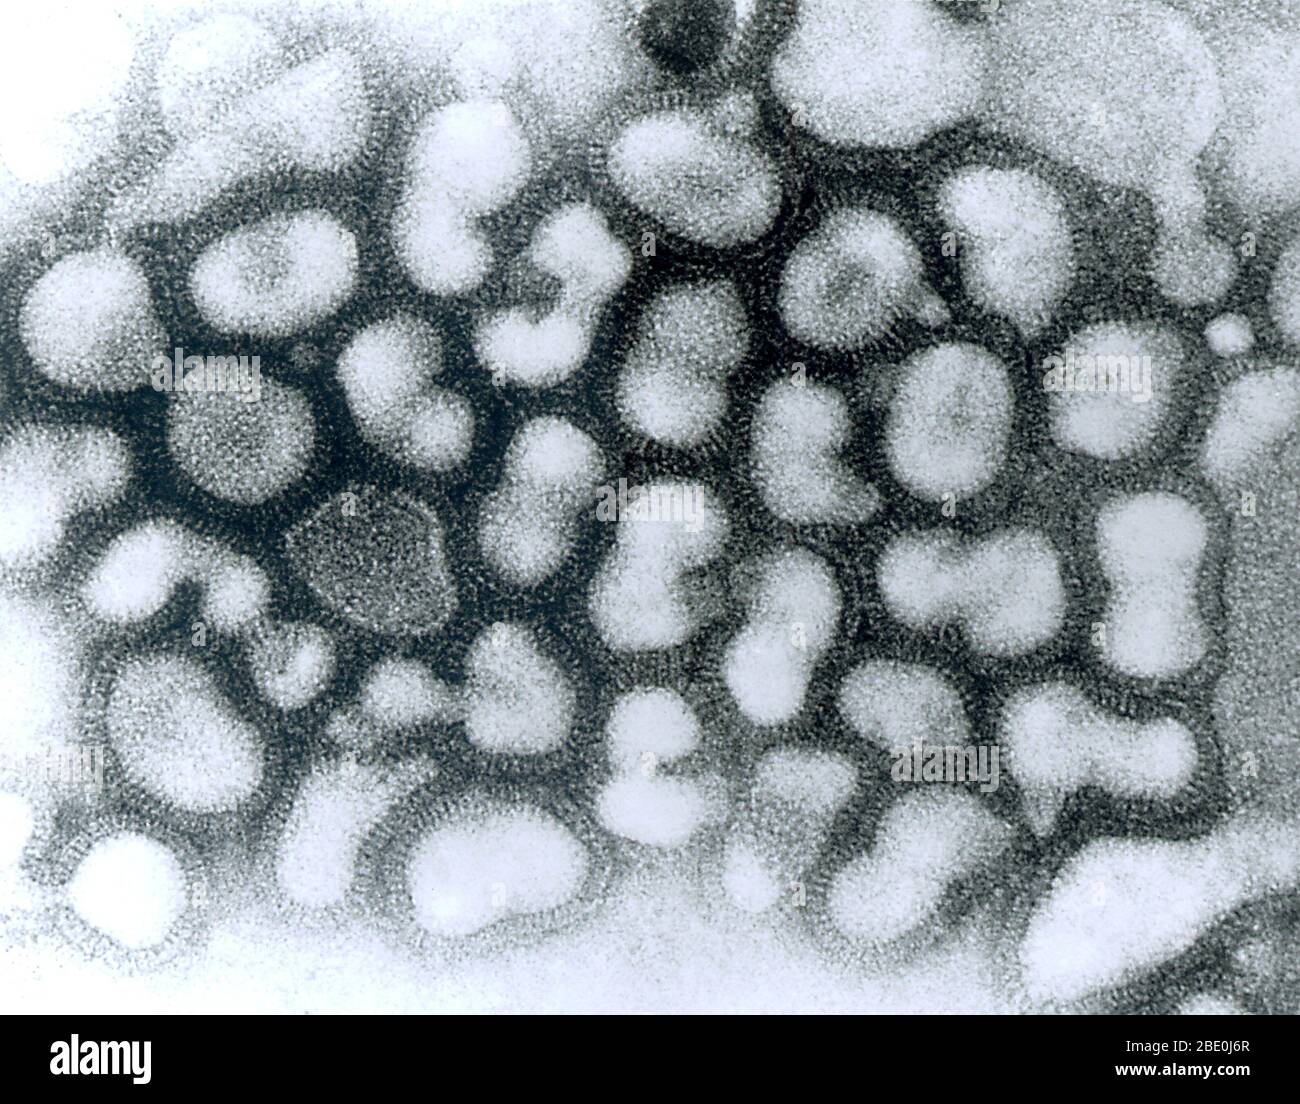 Micrografia elettronica a trasmissione (TEM) del virus dell'influenza A. Foto Stock